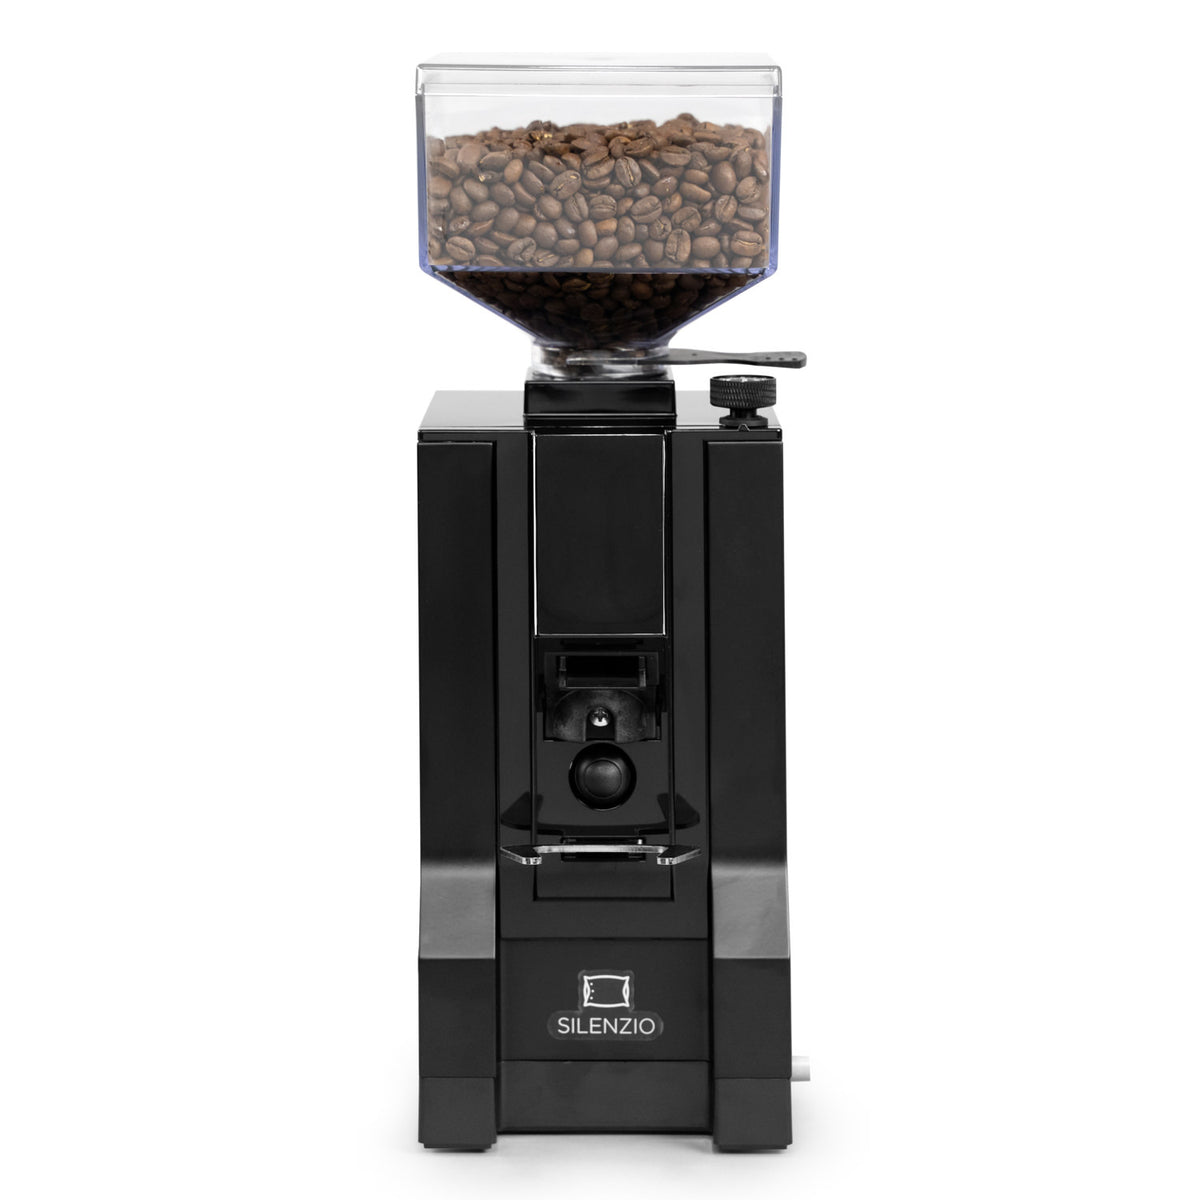 Eureka Mignon Silenzio 濃縮咖啡研磨機